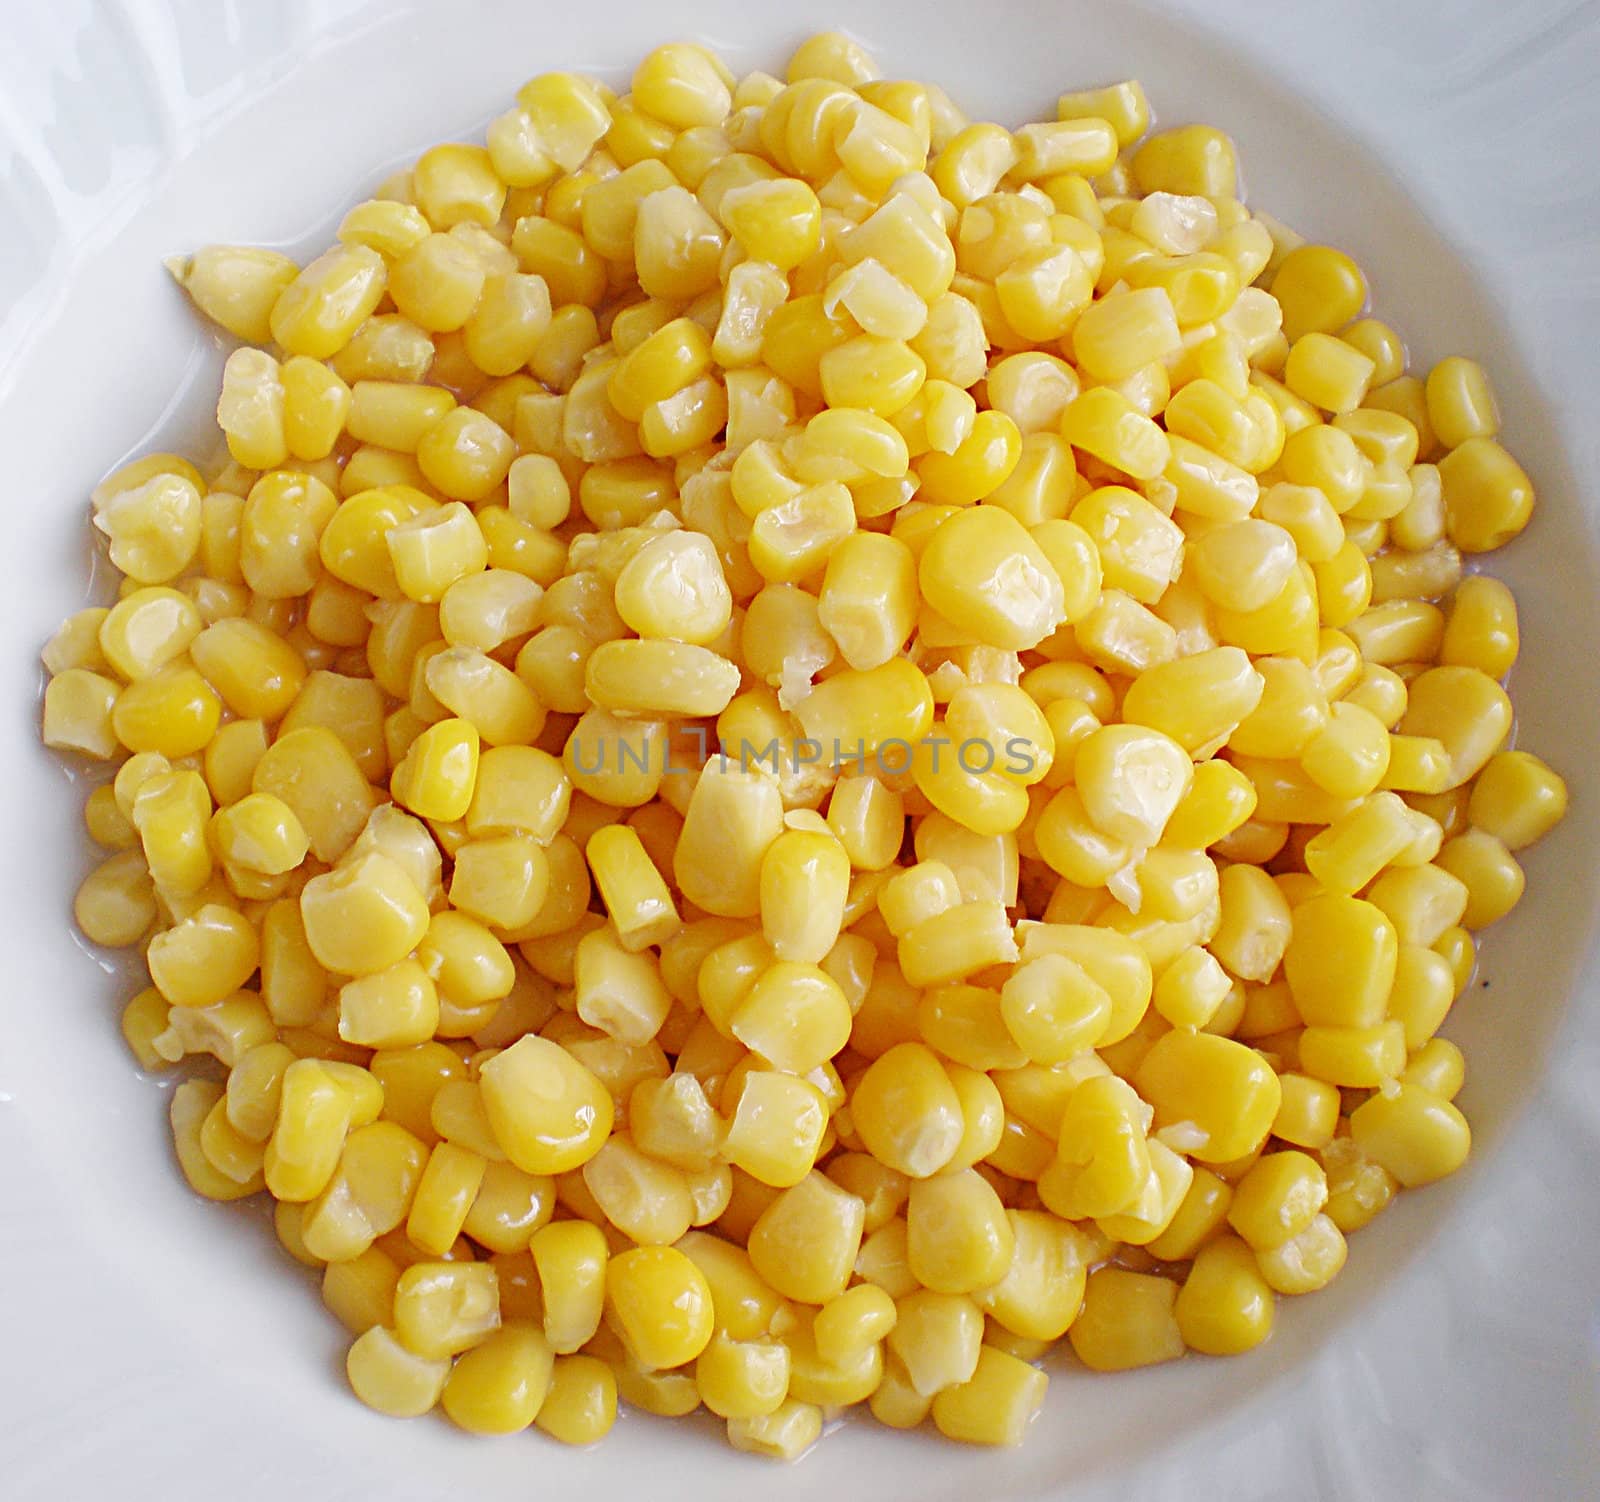 sweet corn in a plate